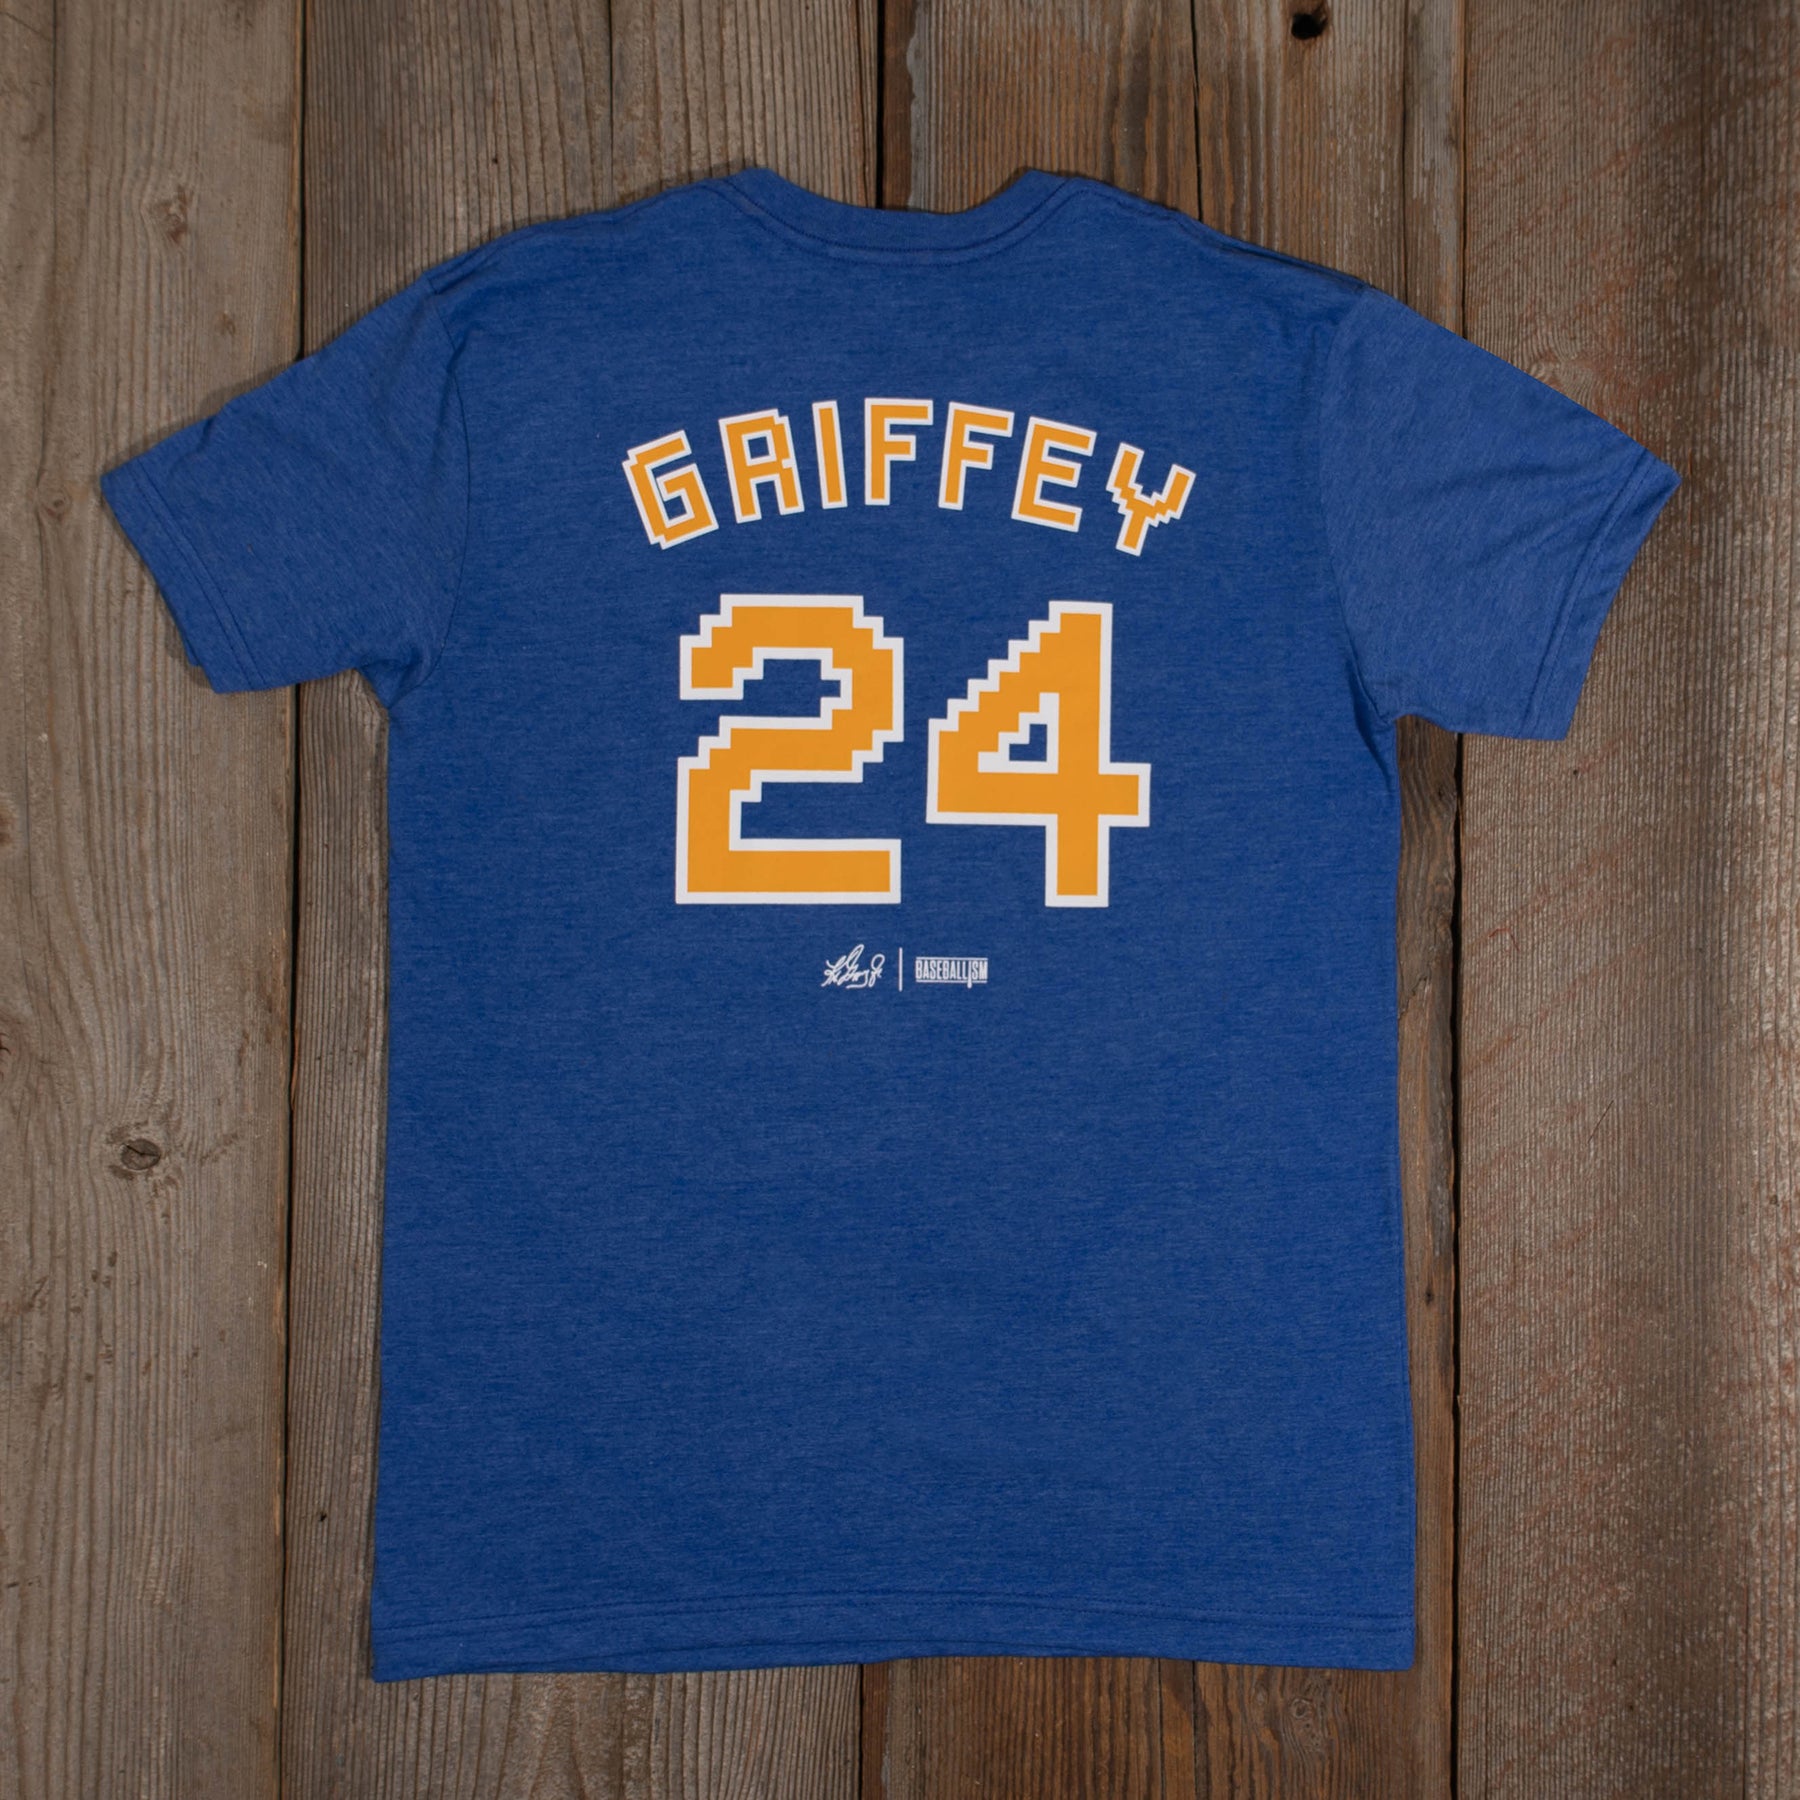 Ken Griffey Jr. Shirt, Baseball shirt, Classic 90s Graphic T - Inspire  Uplift